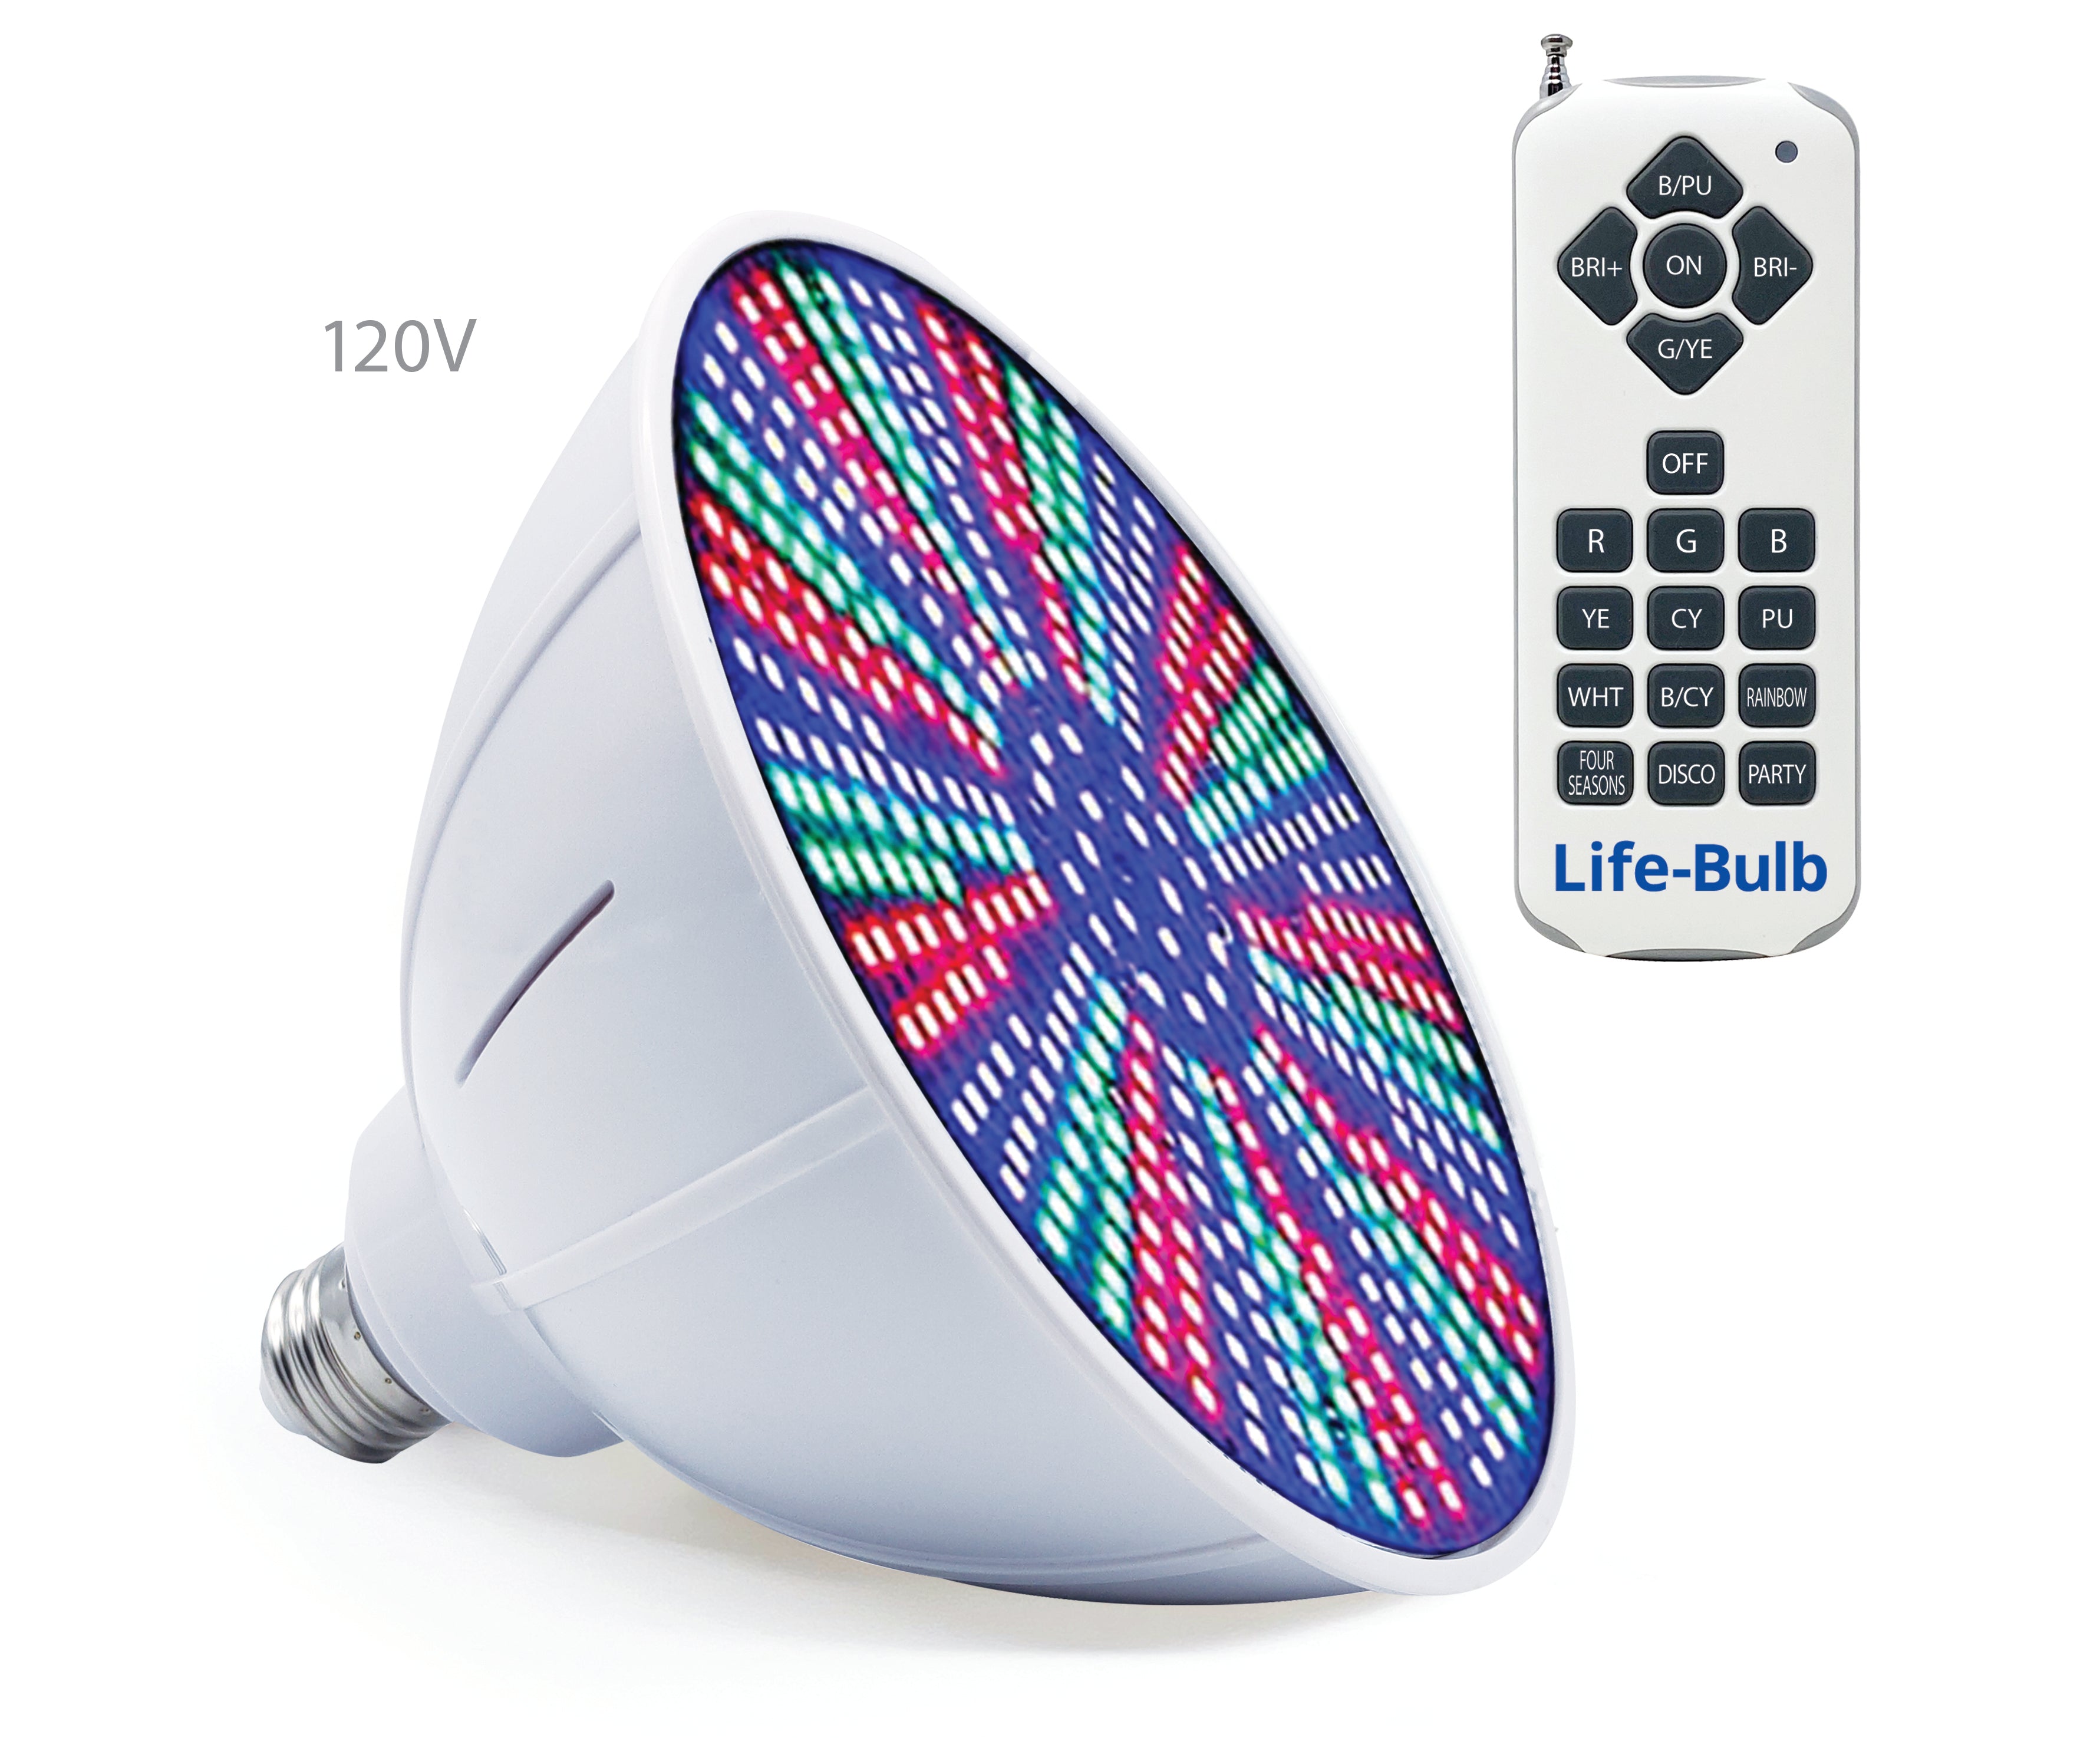 Life-Bulb Ampoule LED pour piscine 120 V 40 W RVB [interrupteur ou télécommande] | Changement de couleur | Garantie de remplacement à vie | Ampoule de remplacement pour luminaire Pentair et Hayward